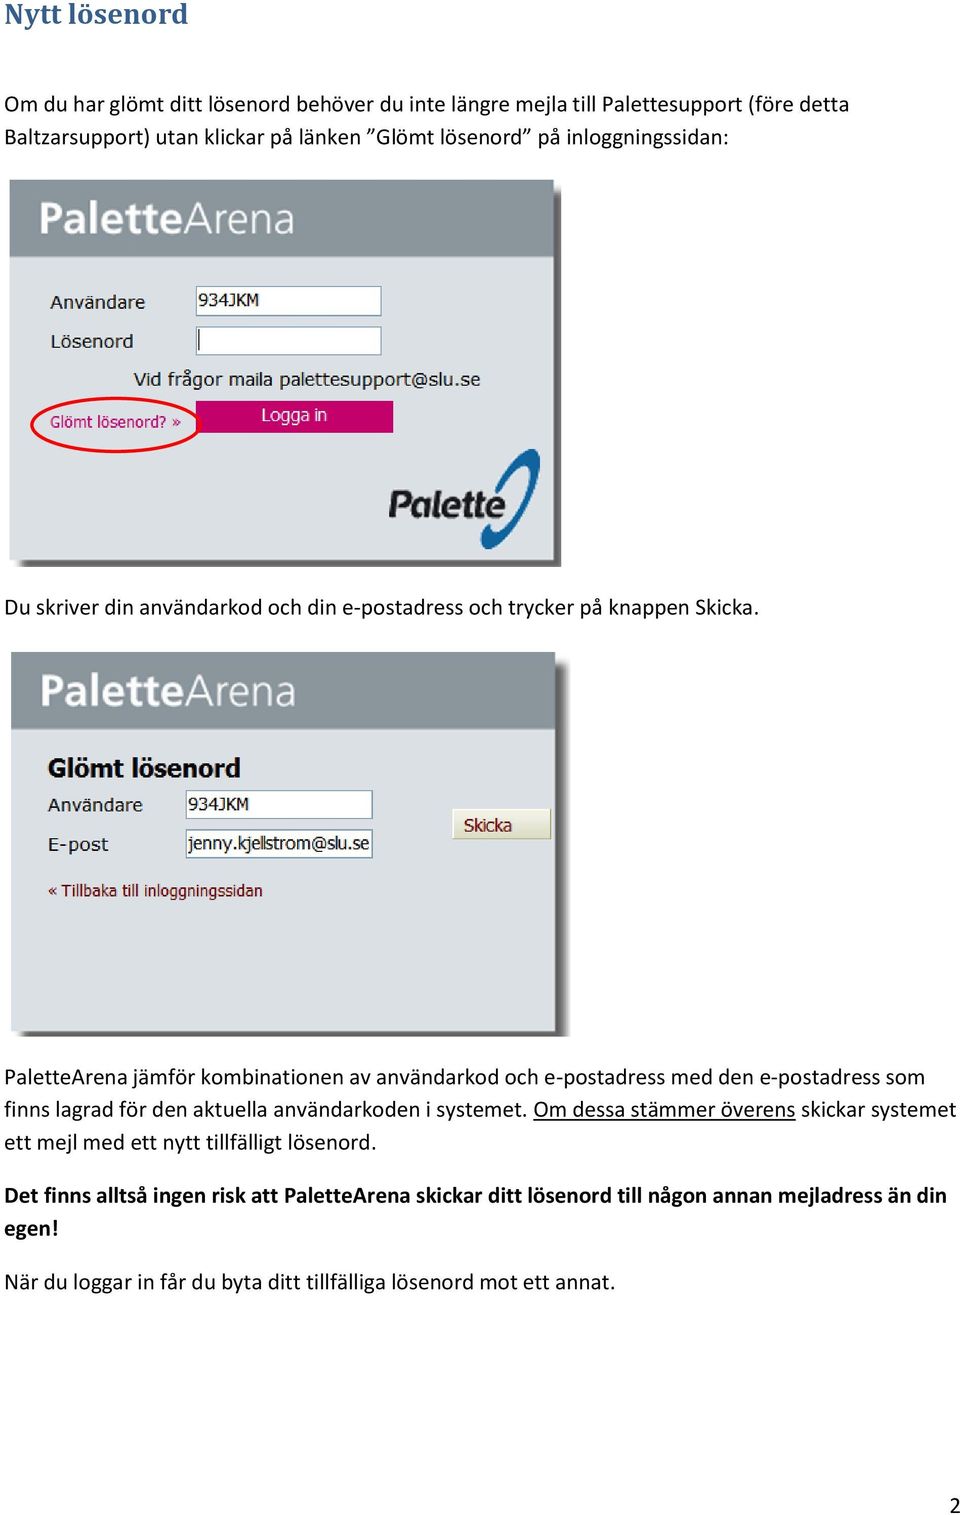 PaletteArena jämför kombinationen av användarkod och e-postadress med den e-postadress som finns lagrad för den aktuella användarkoden i systemet.